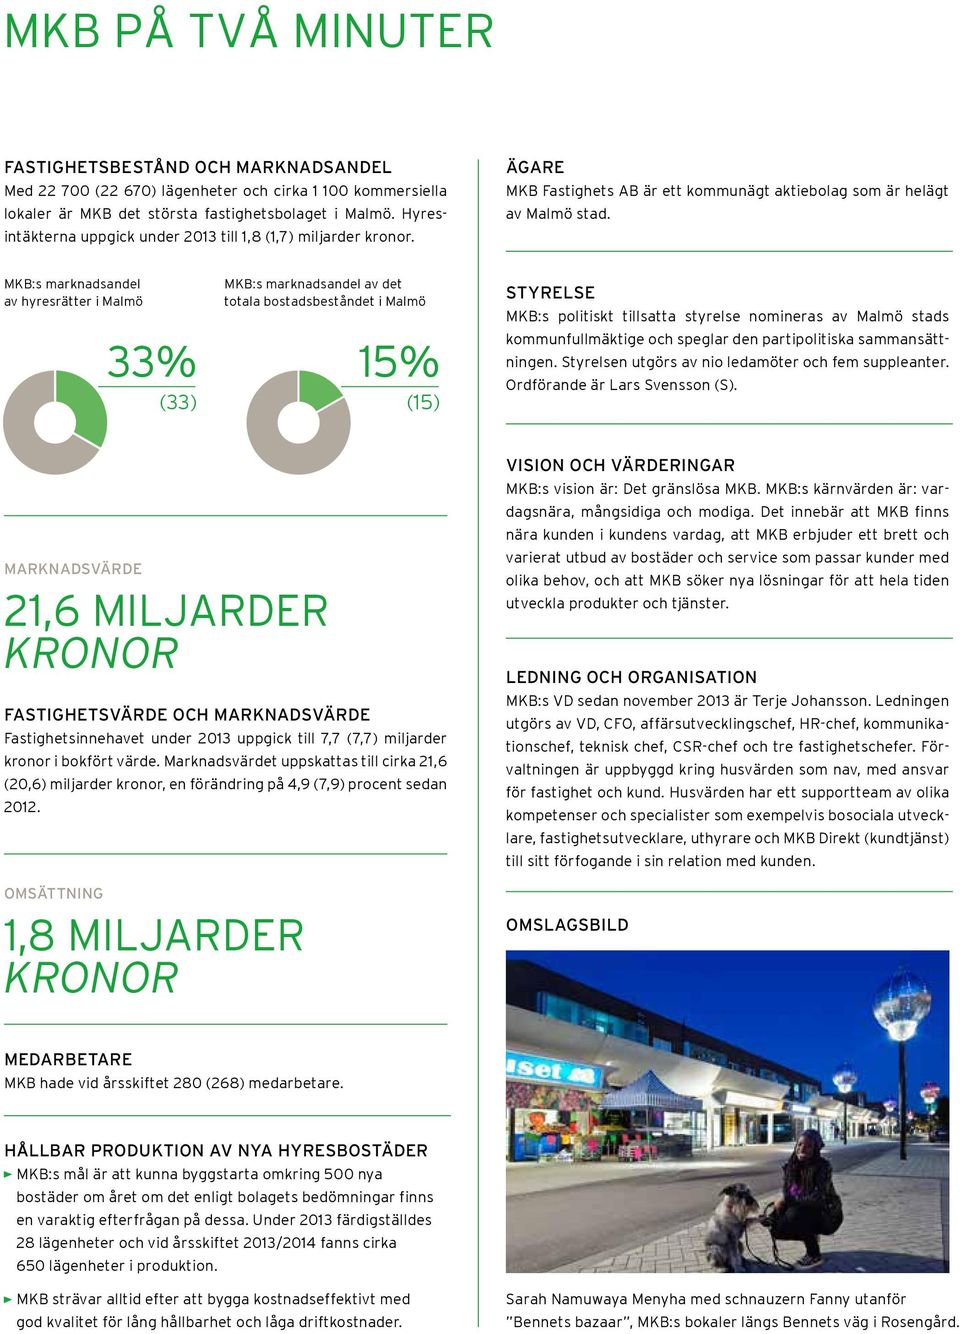 MKB:s marknadsandel av hyresrätter i Malmö 33% (33) MKB:s marknadsandel av det totala bostadsbeståndet i Malmö 15% (15) STYRELSE MKB:s politiskt tillsatta styrelse nomineras av Malmö stads